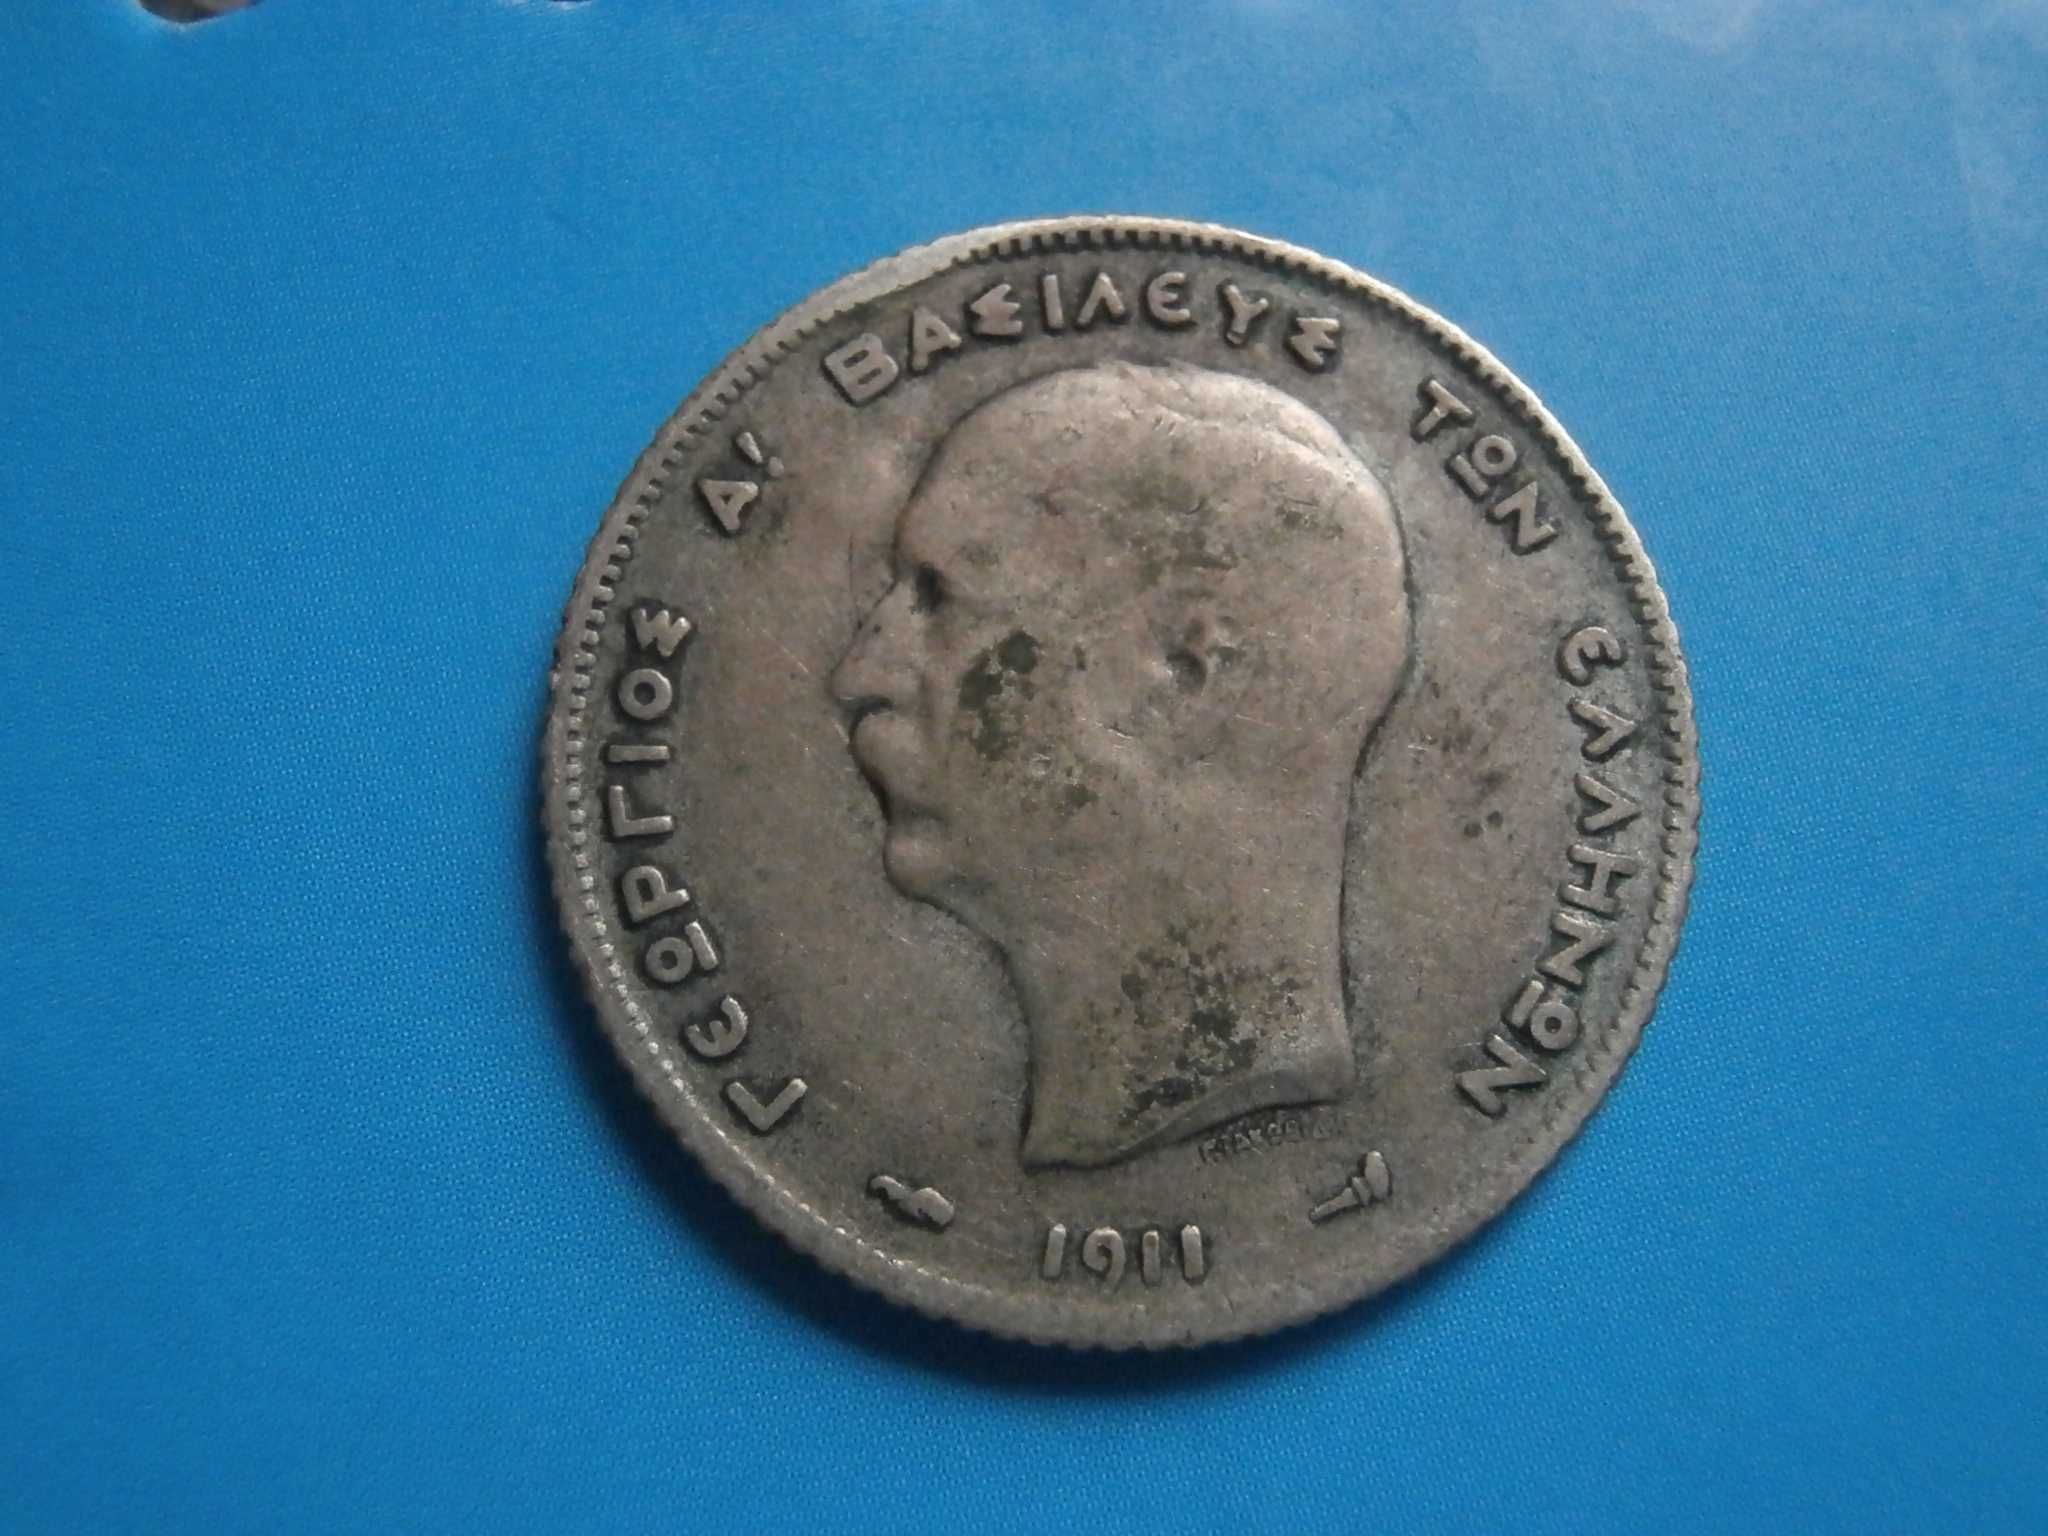 Османски сребърни монети, 1 драхма 1911,1 динар 1904, 25 куруш